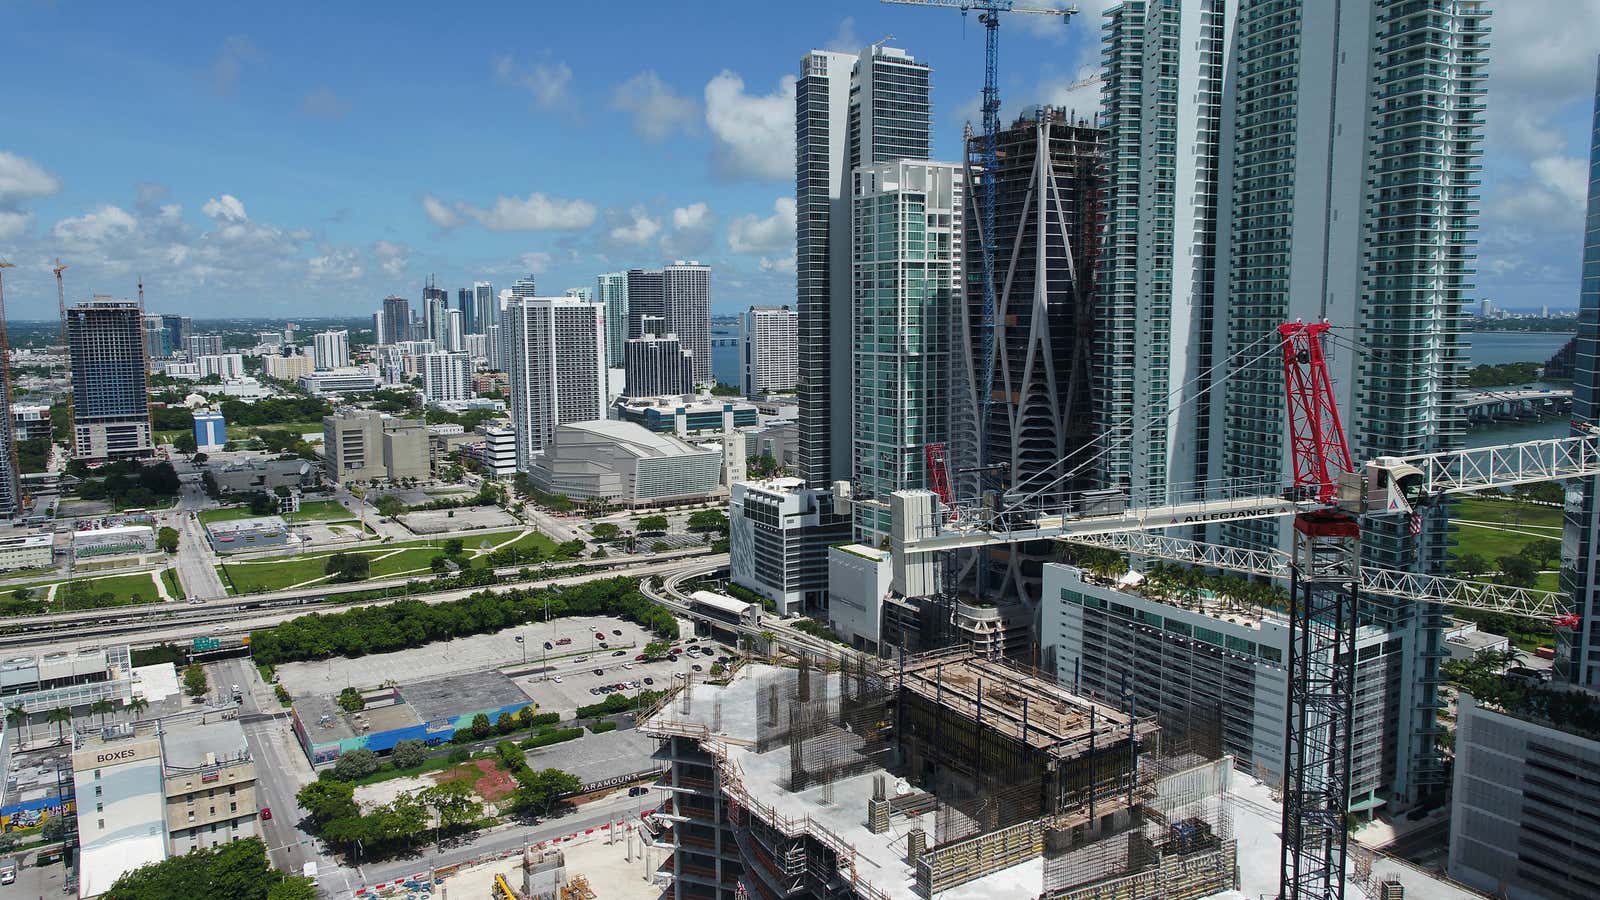 Miami’s real estate mogul.